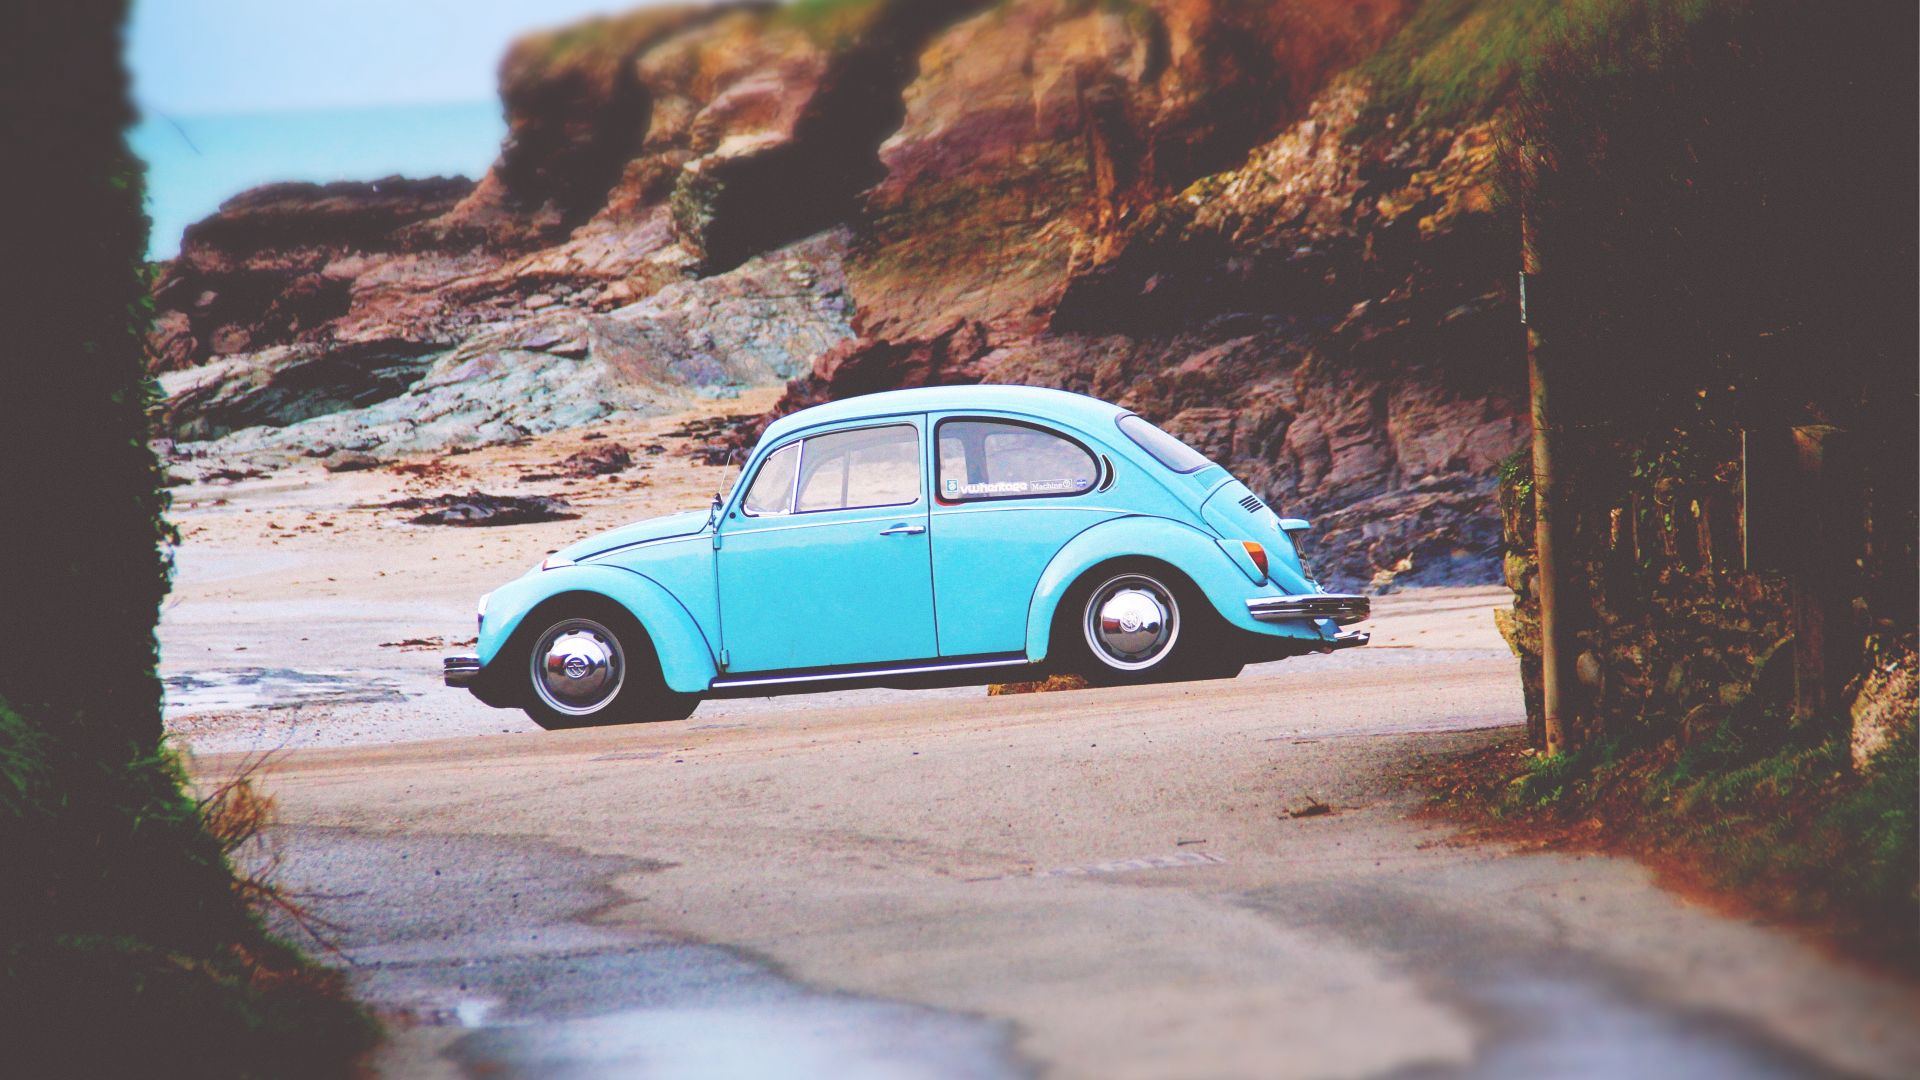 Desktop Wallpaper Volkswagen Beetle Car, Hd Image, Picture, Background,  Aakkks